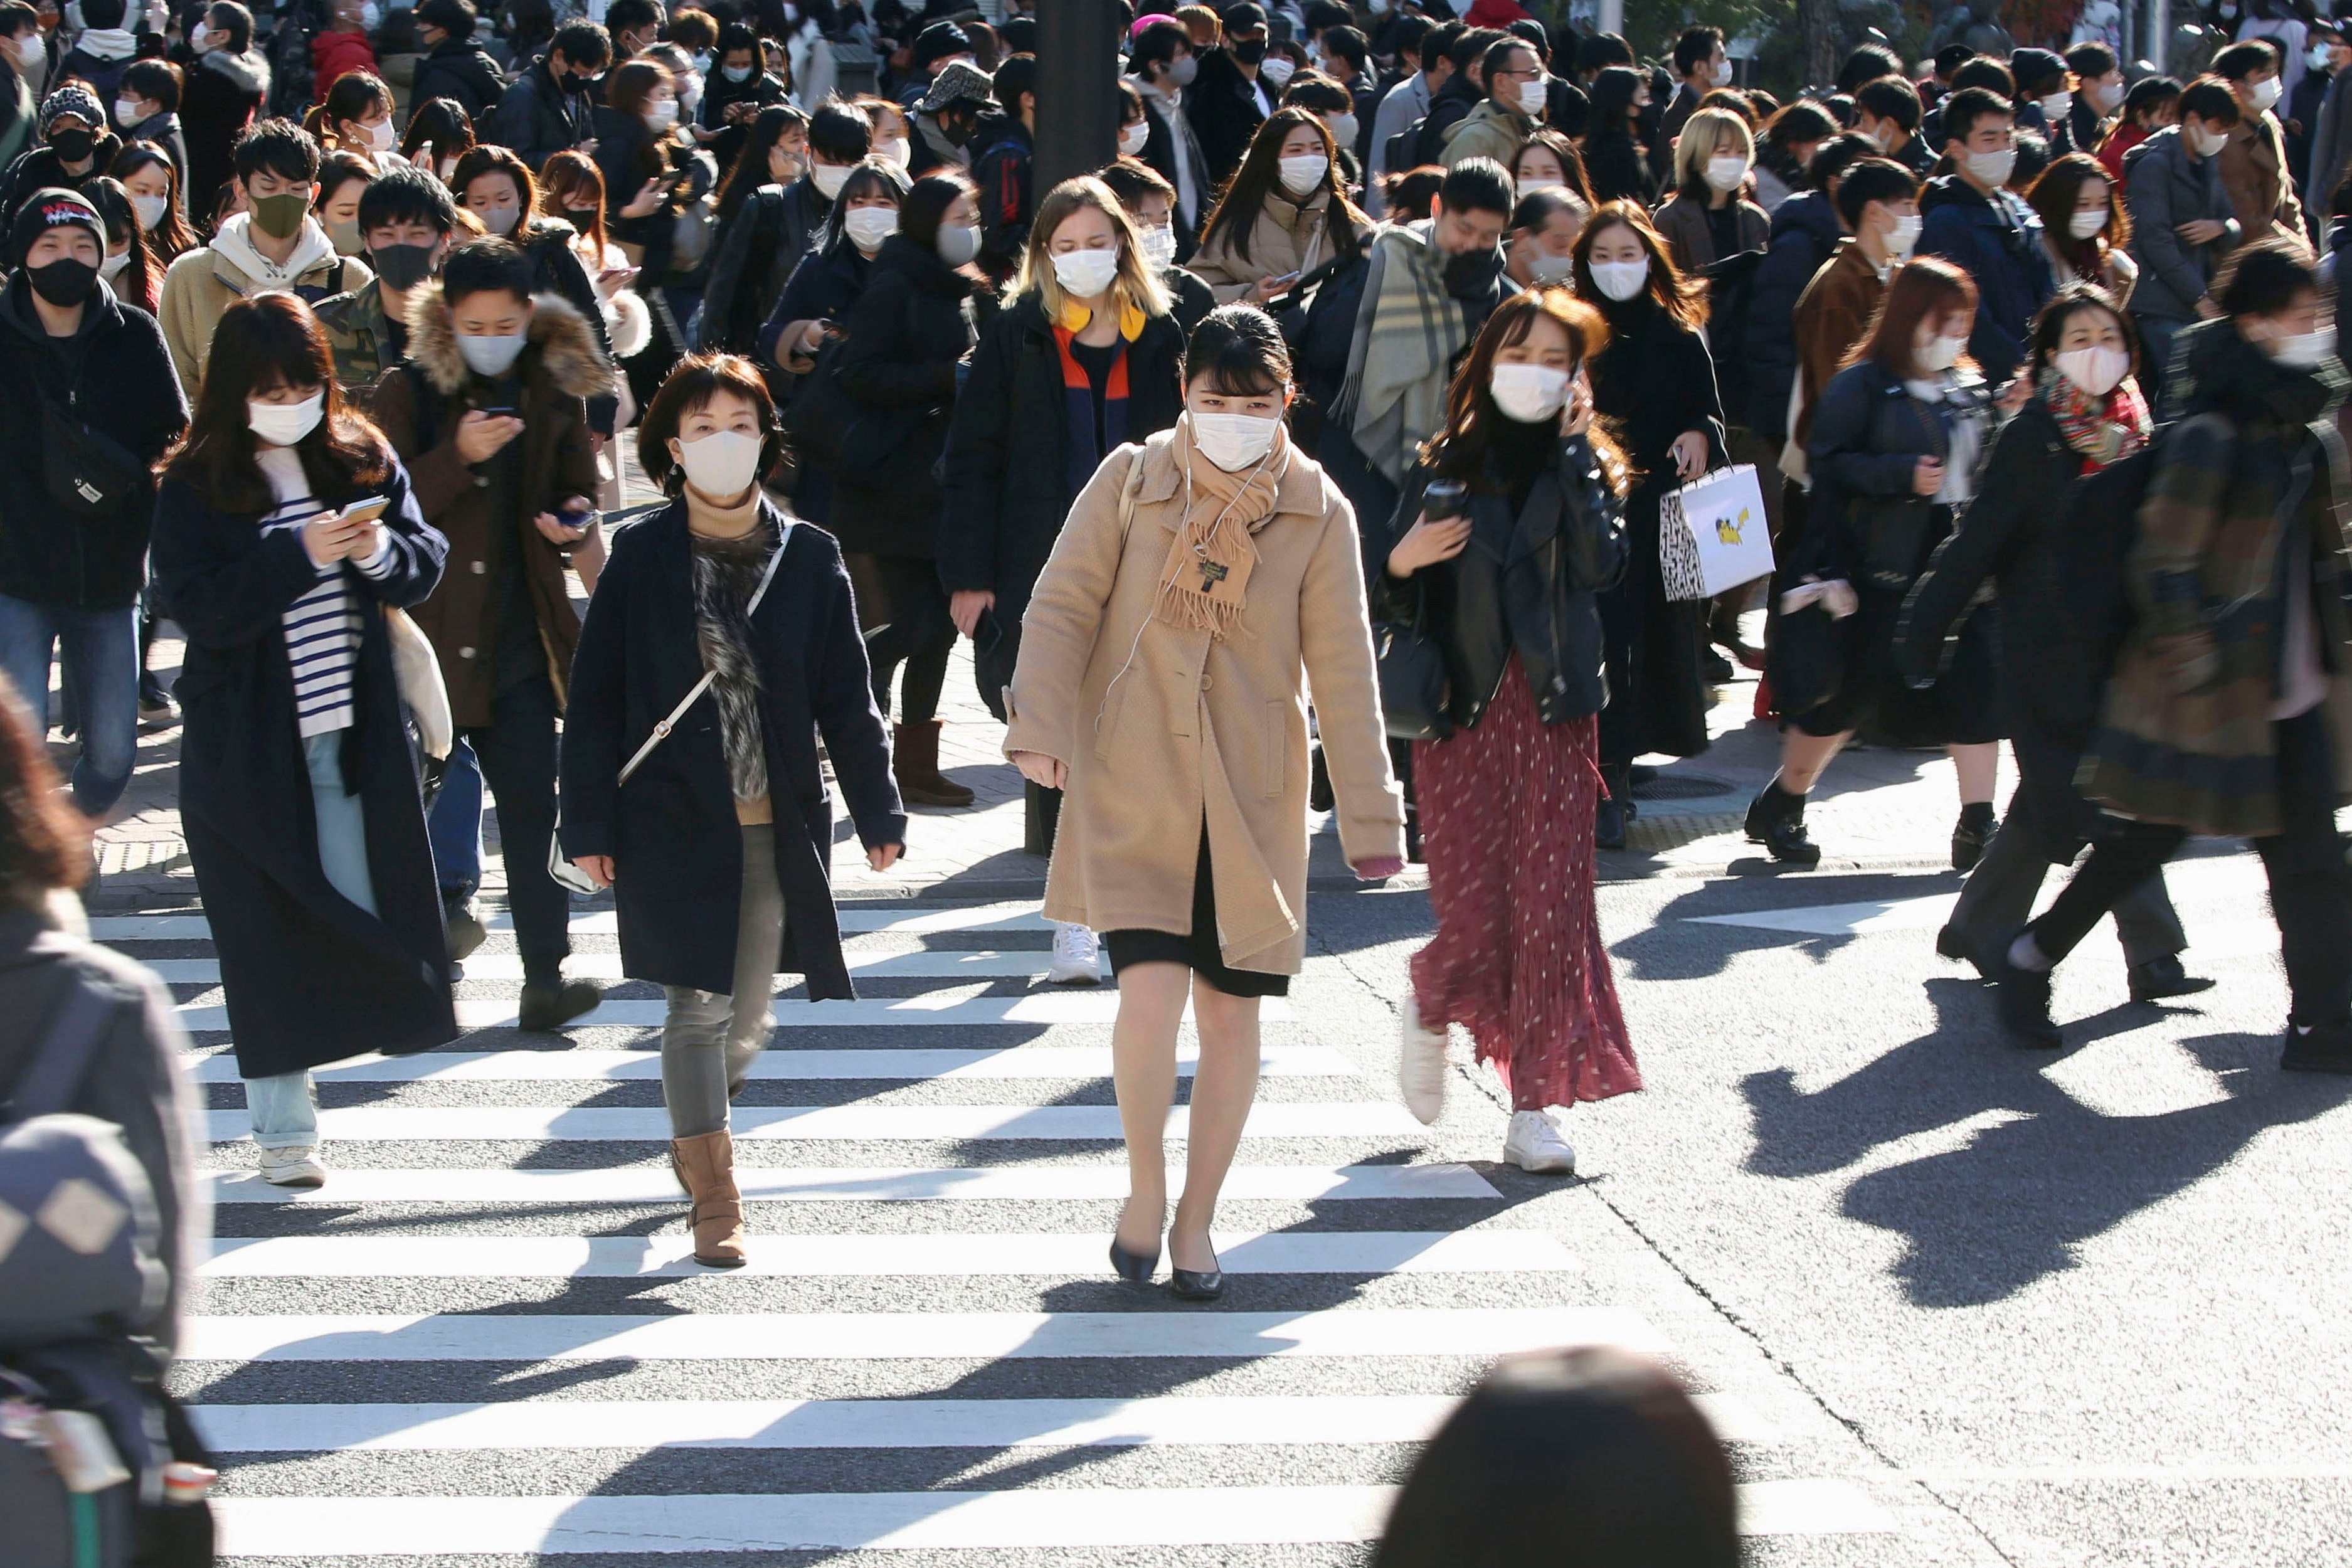 Una multitud con mascarillas para frenar la propagación del coronavirus se desplaza por una concurrida intersección en el distrito comercial de Shibuya, en Tokio, el sábado 26 de diciembre de 2020.&nbsp;